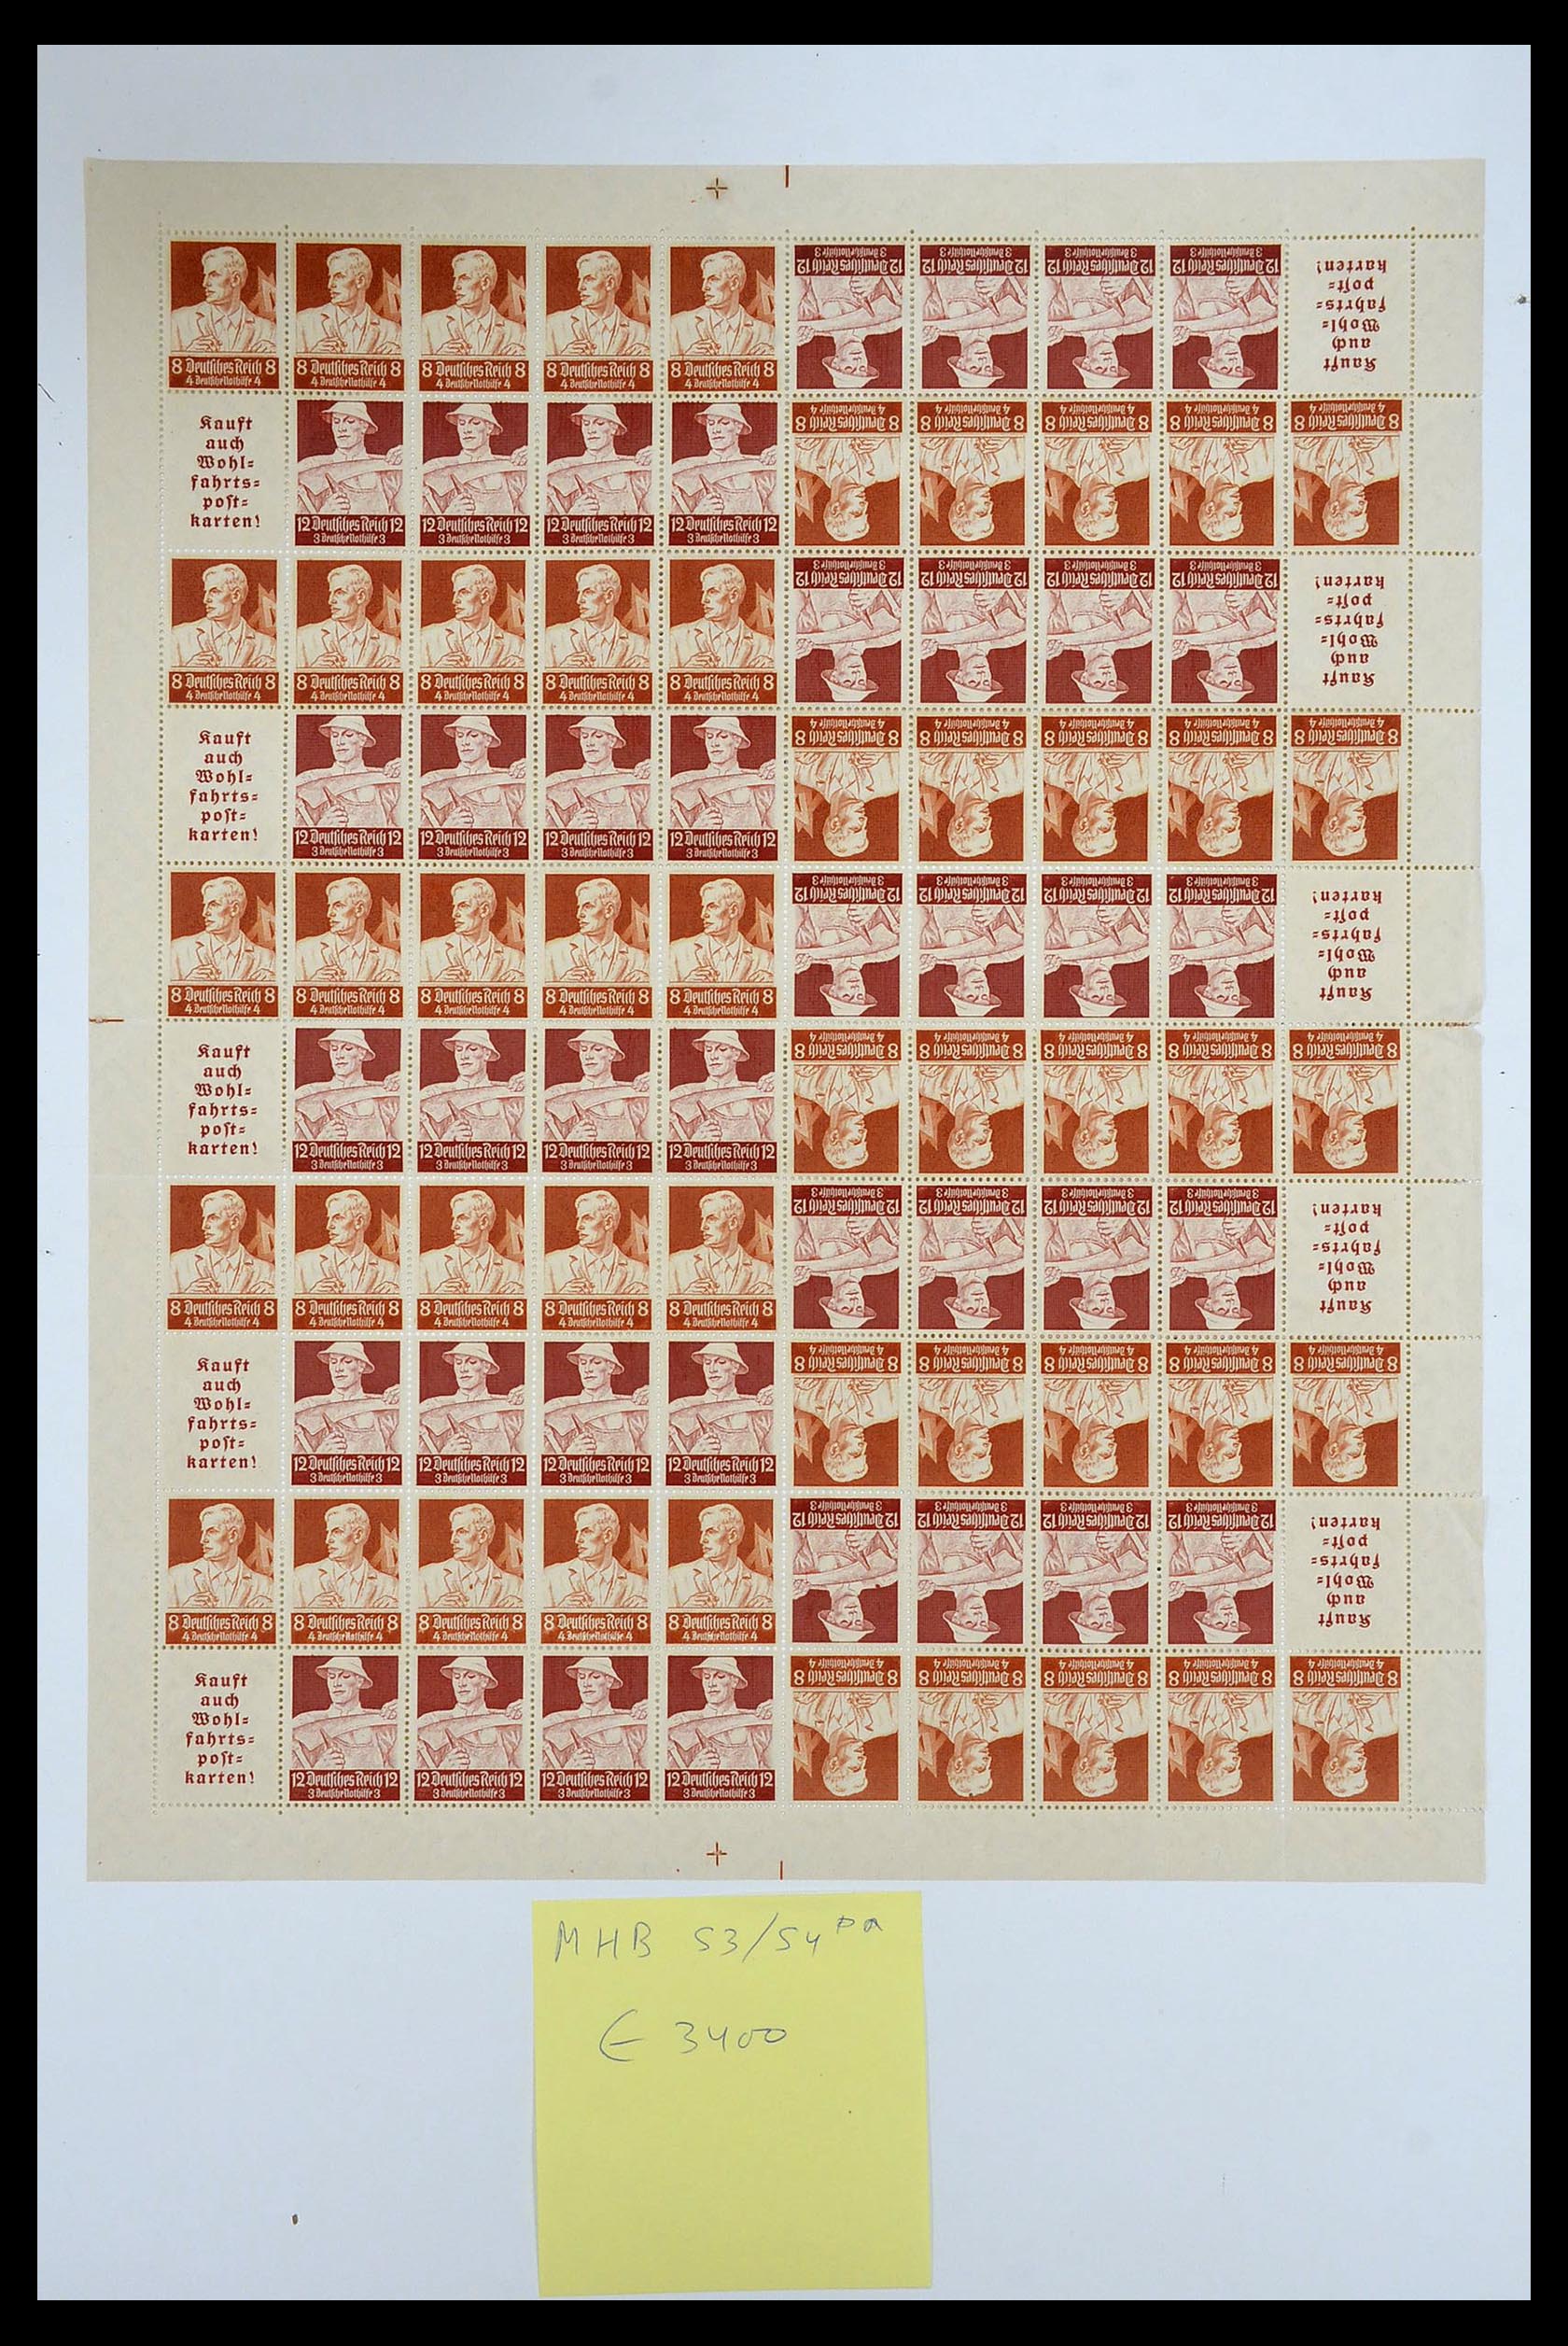 35075 033 - Stamp Collection 35075 German Reich Markenheftchenbogen 1933-1941.